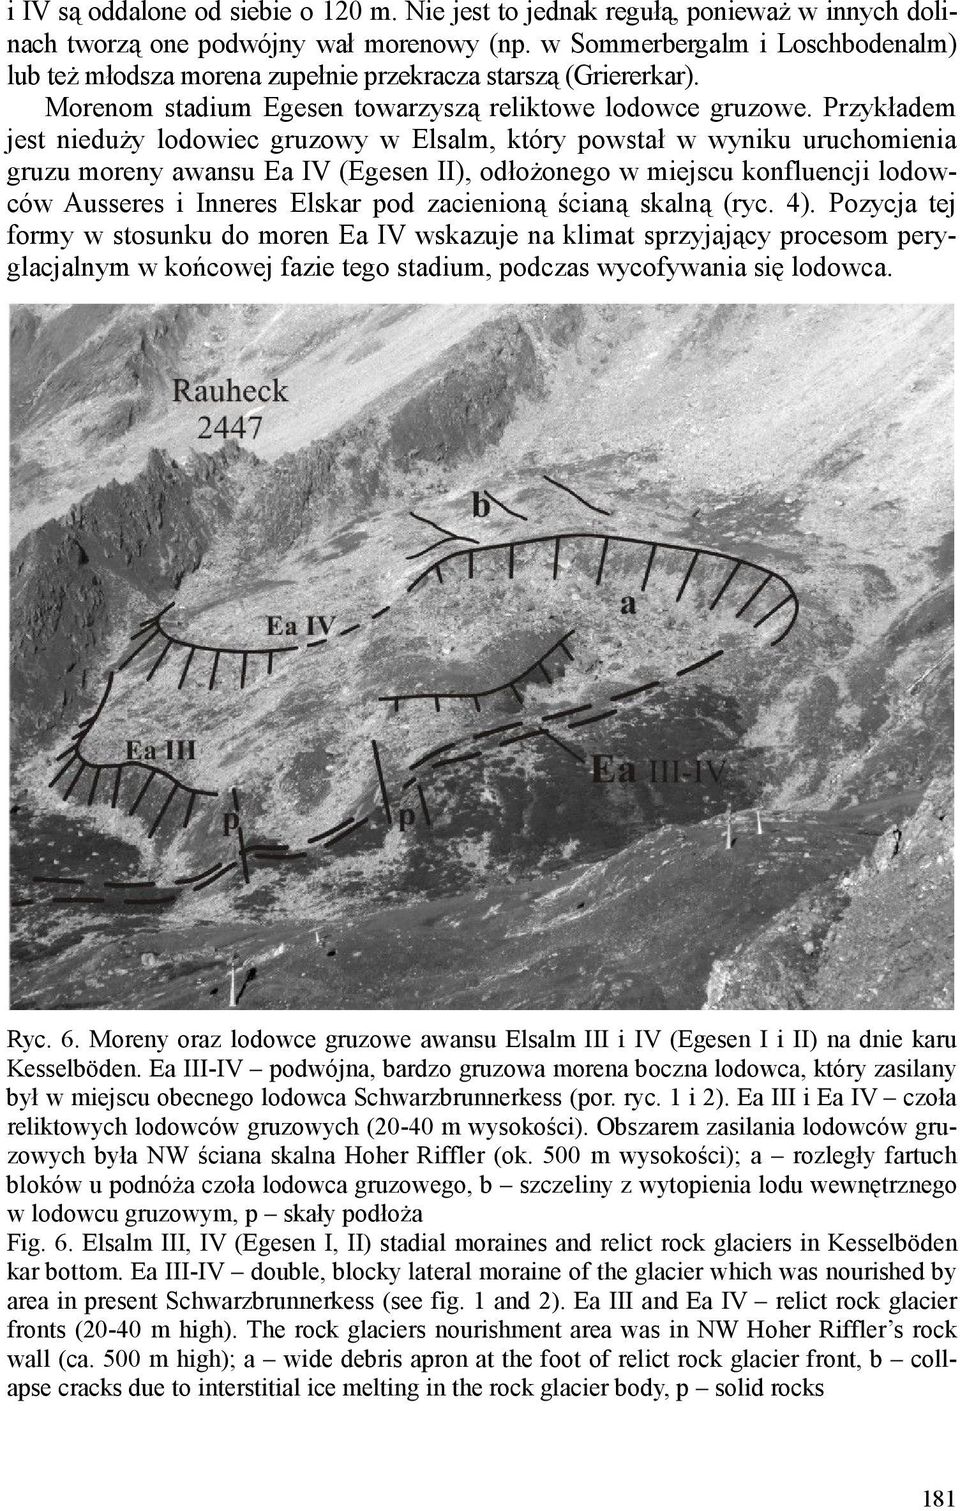 Przykładem jest nieduŝy lodowiec gruzowy w Elsalm, który powstał w wyniku uruchomienia gruzu moreny awansu Ea IV (Egesen II), odłoŝonego w miejscu konfluencji lodowców Ausseres i Inneres Elskar pod